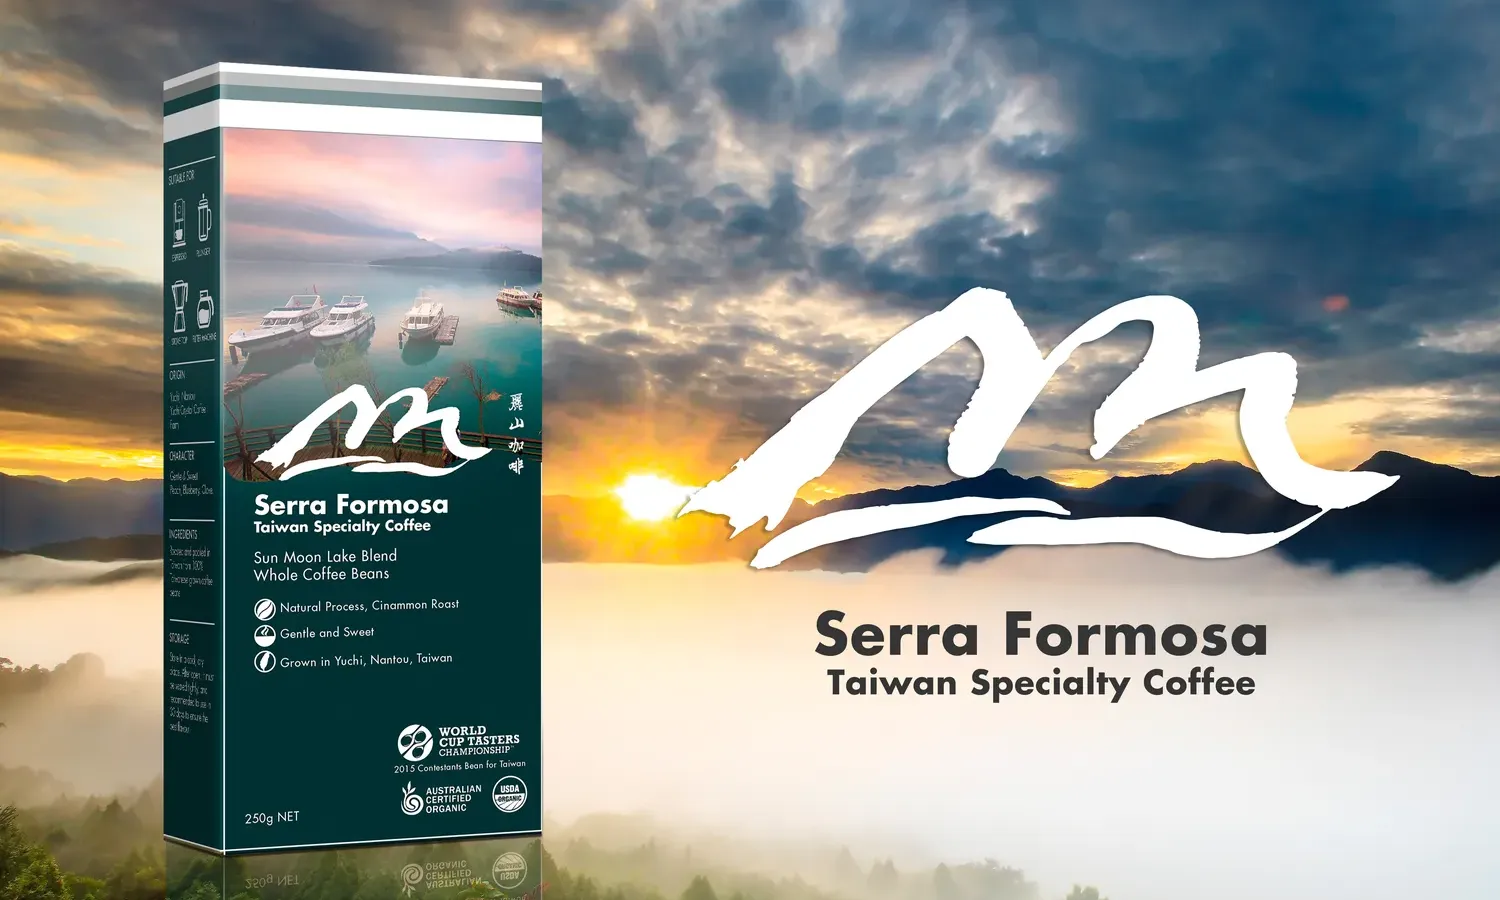 Serra Formosa – Taiwan Specialty Coffee